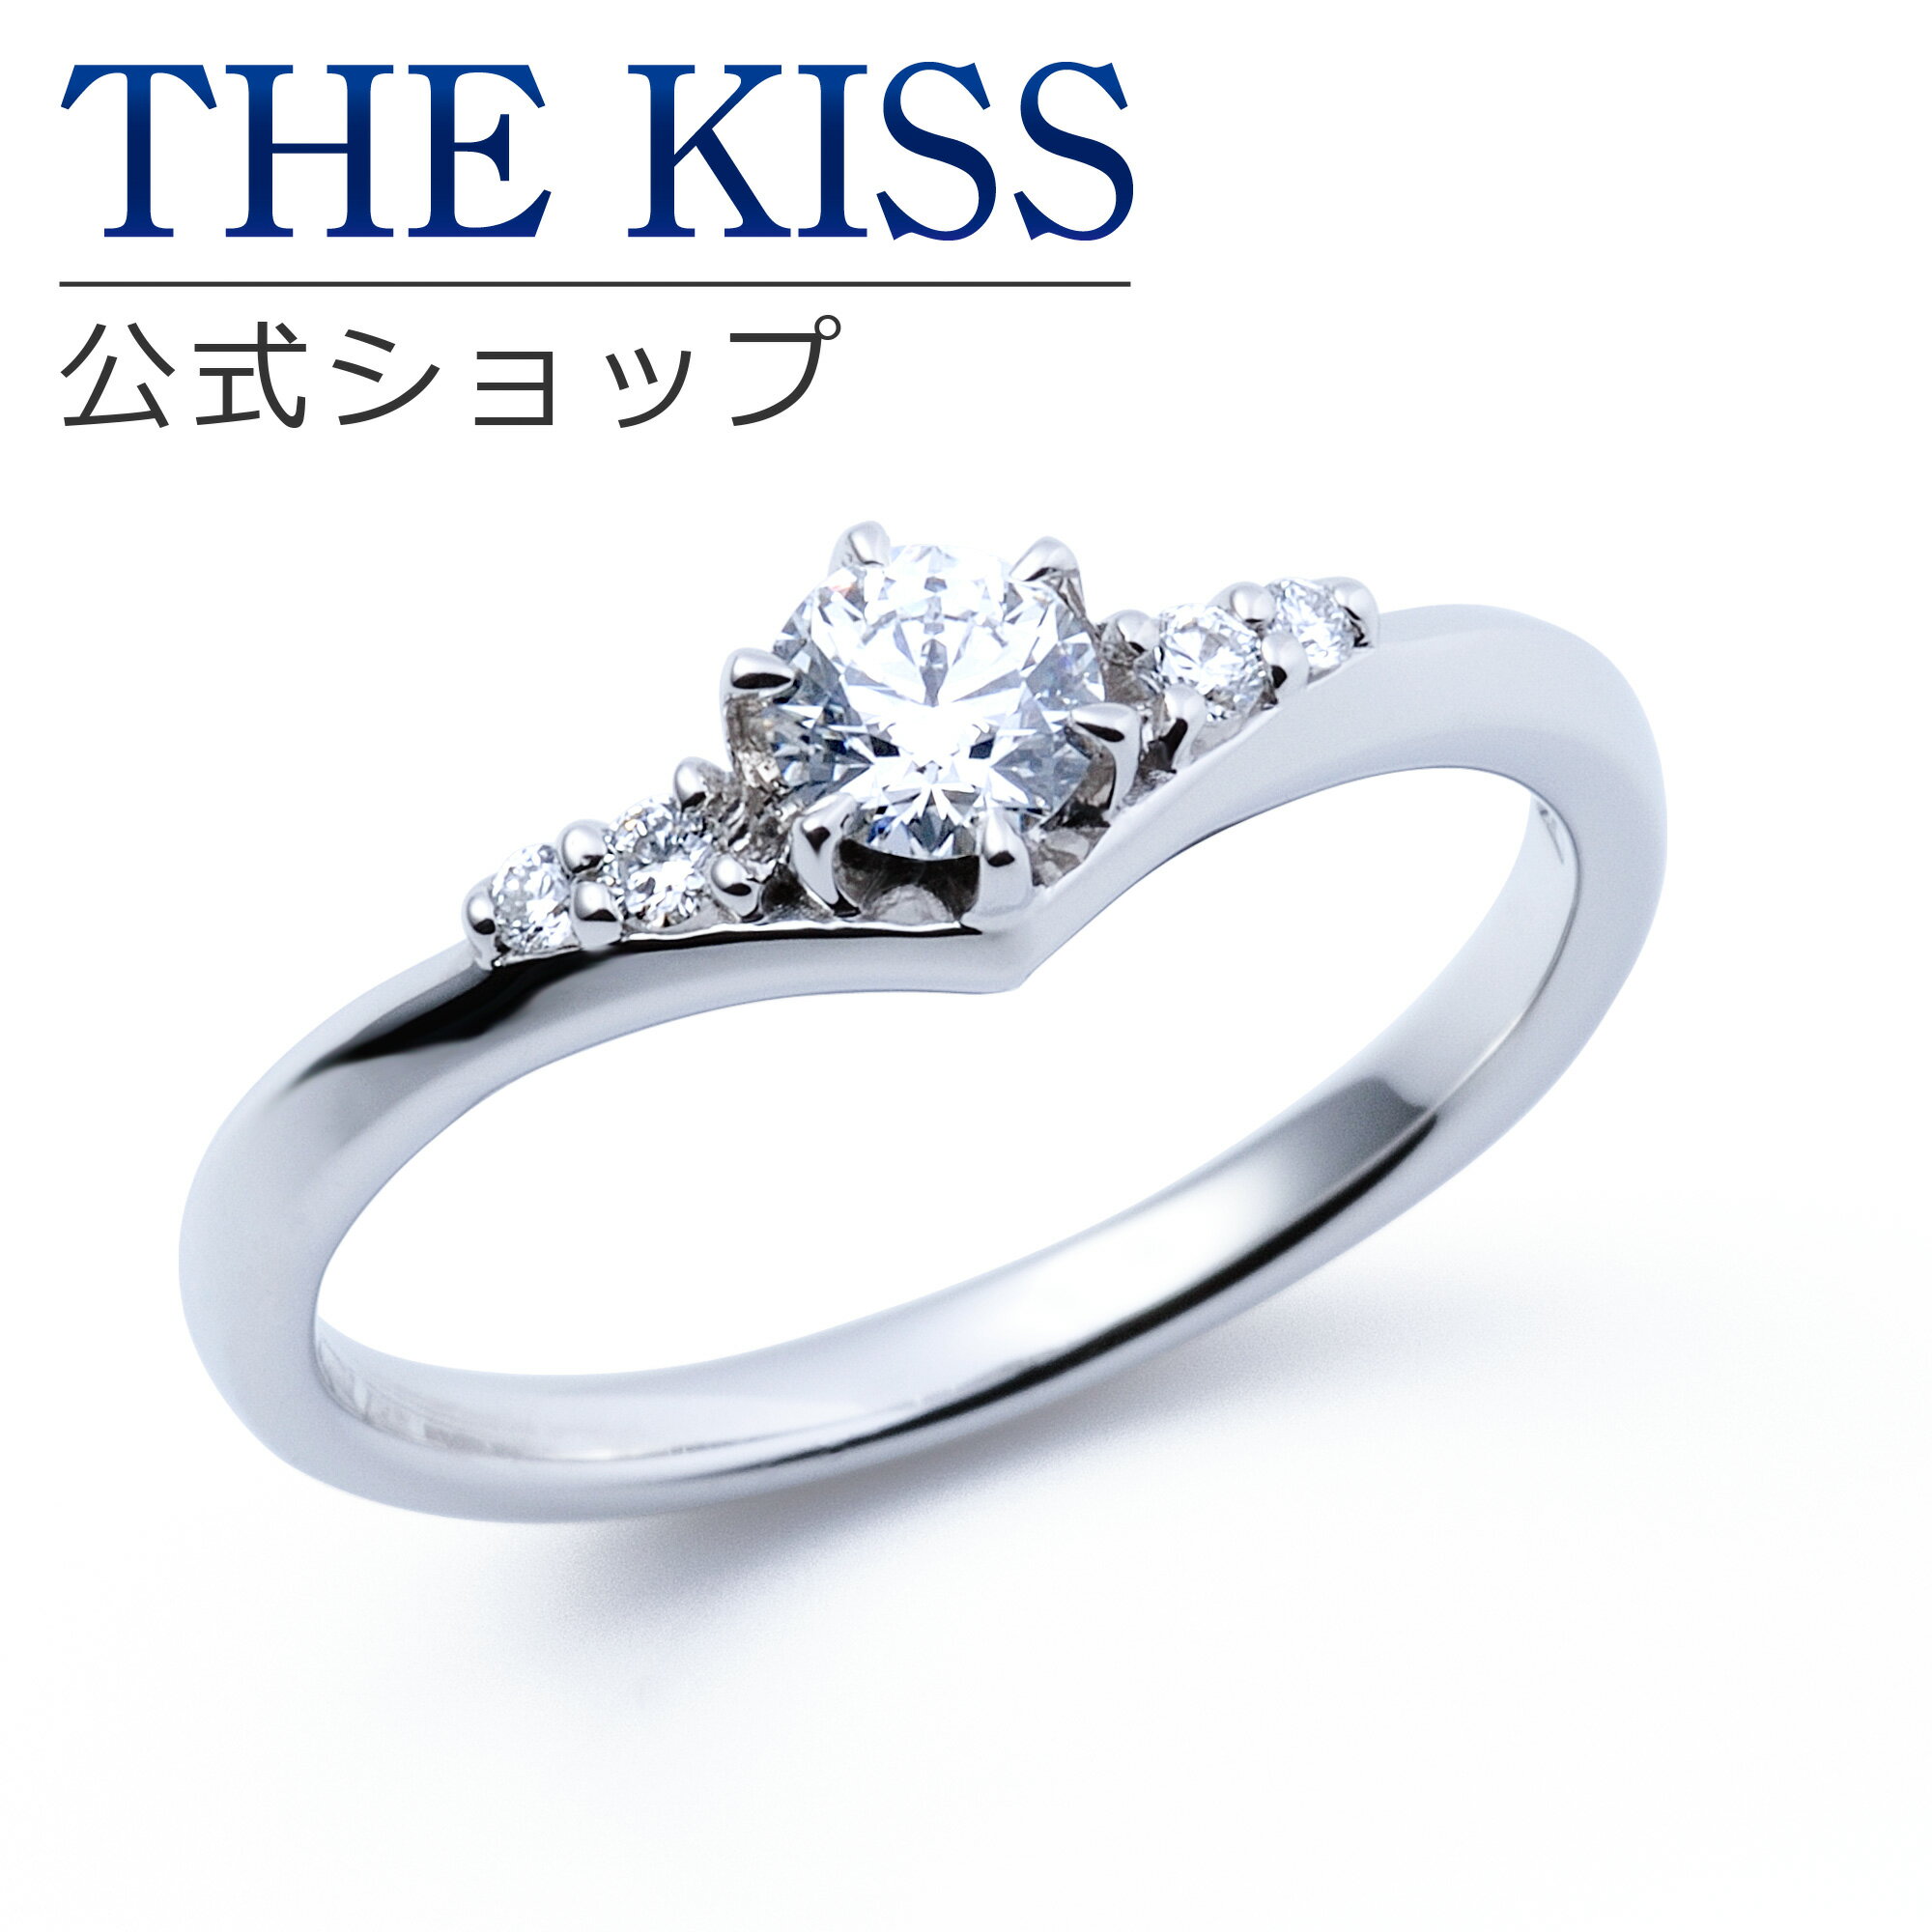 【ラッピング無料】【刻印無料】【THE KISS Anniversary】THE KISS 公式ショップ プラチナ エンゲージリング 婚約指輪 結婚指輪 ブライダルリング プロポーズ THE KISS ザキッス 指輪 6062103120 シンプル ブライダル 鑑定書付 ダイヤモンド【0.20ct F VS2 EX】